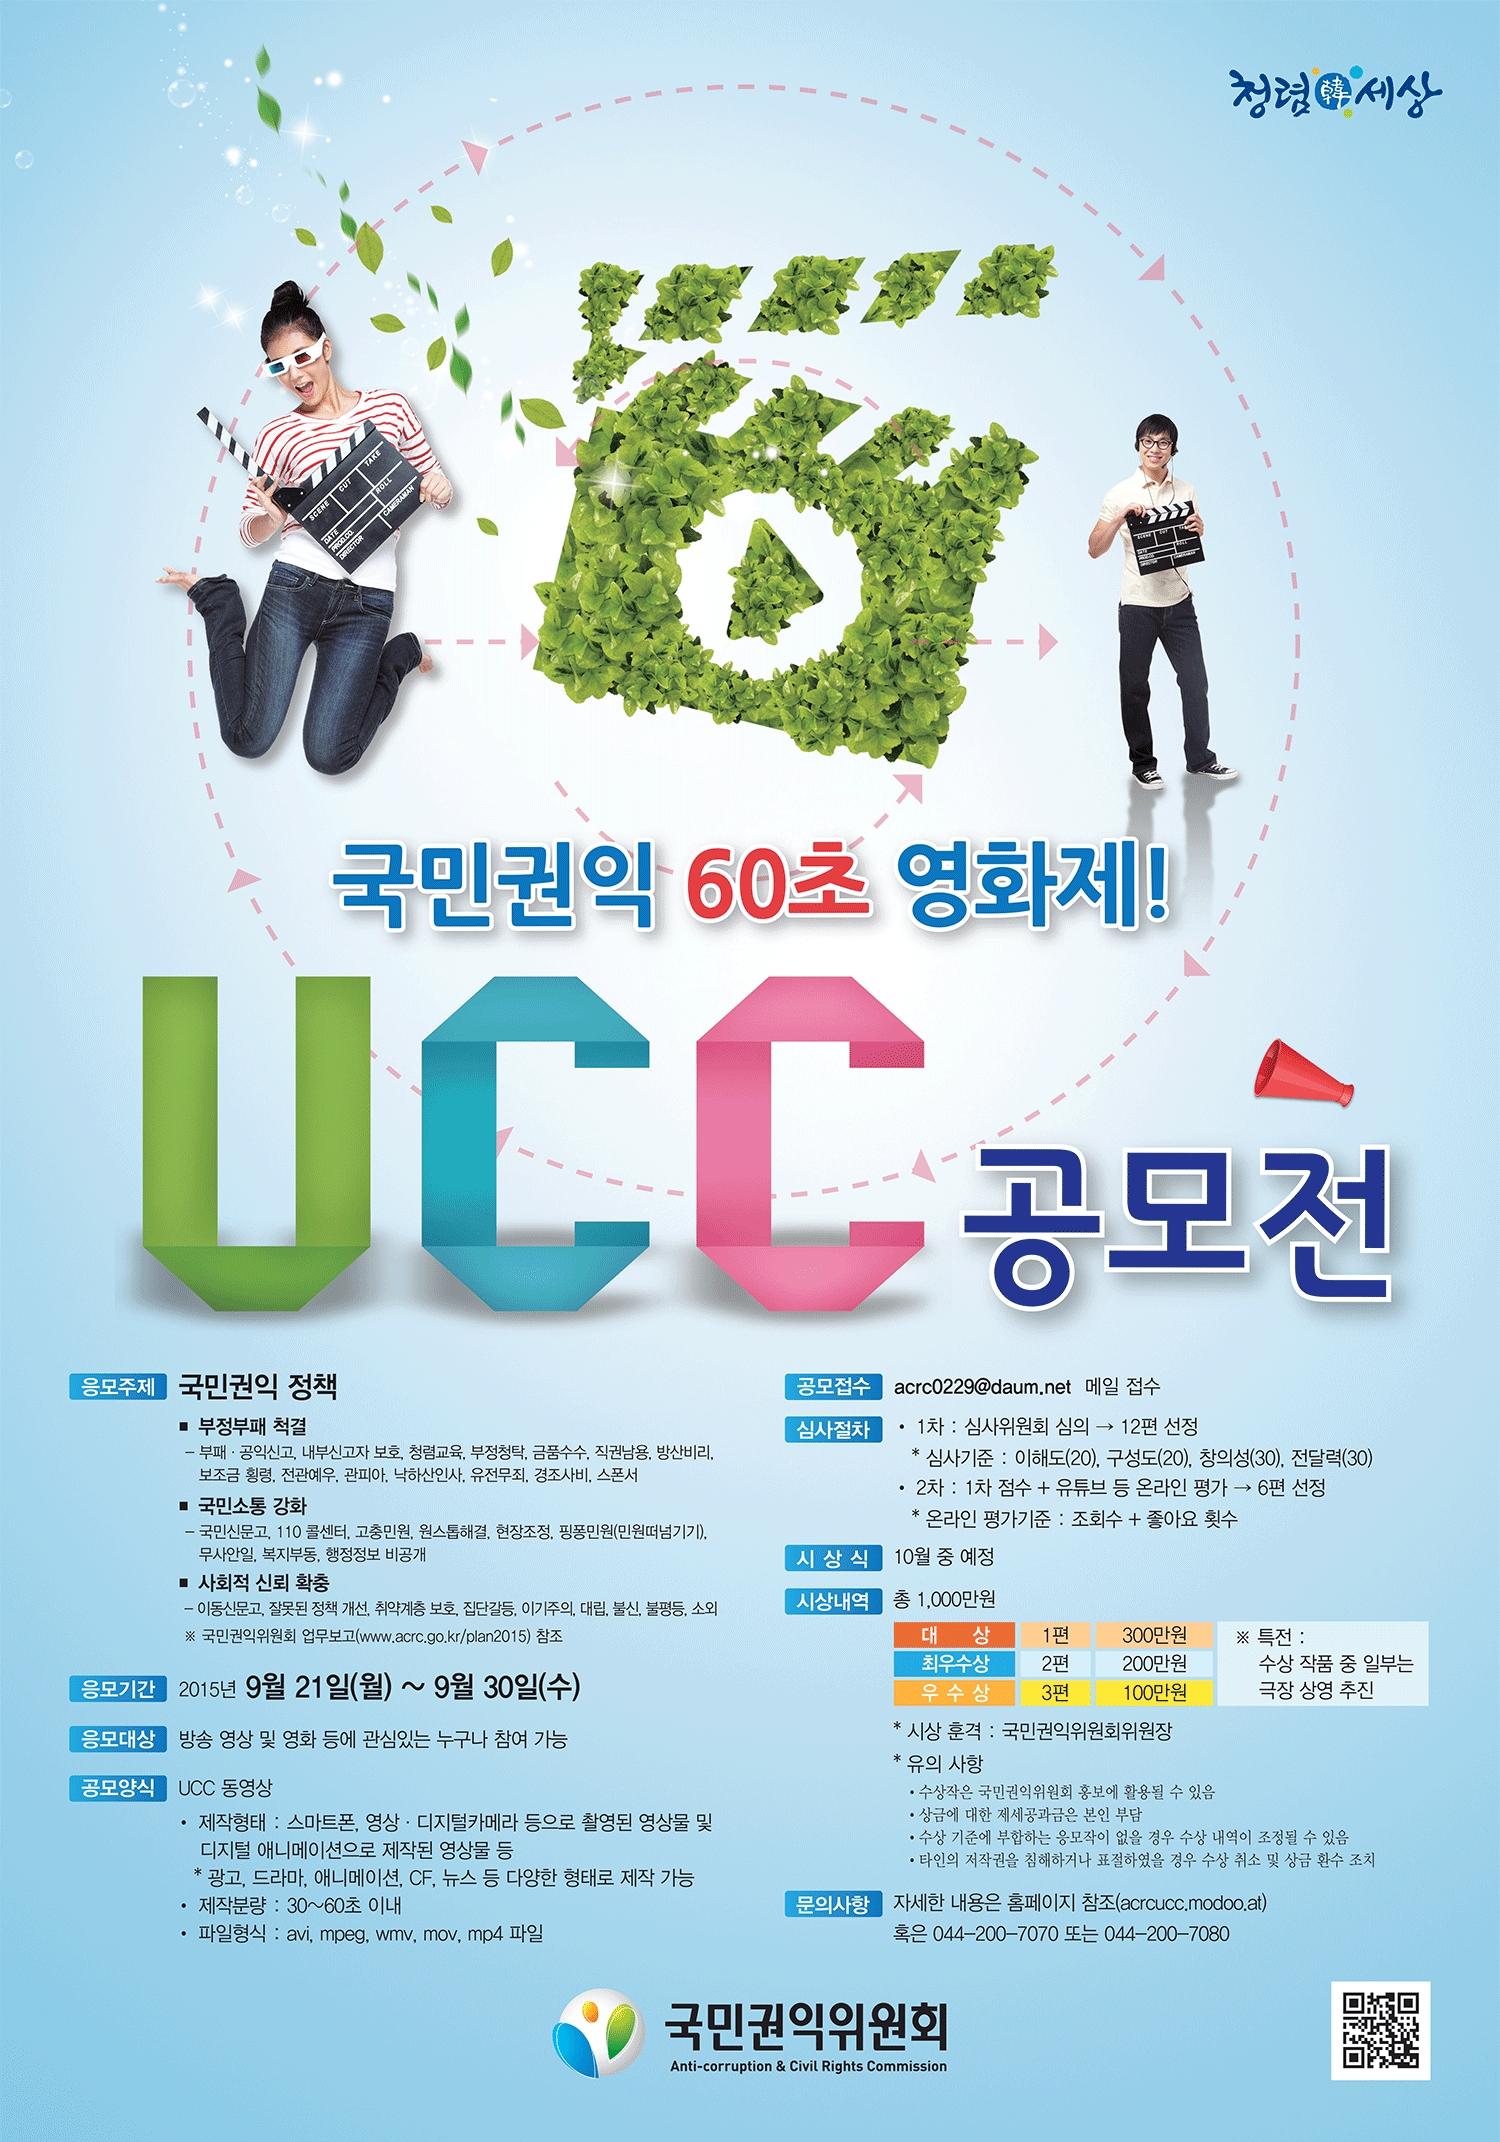 국민권익위원회 주관 '국민권익 60초 영화제' UCC 공모전 개최 안내 1